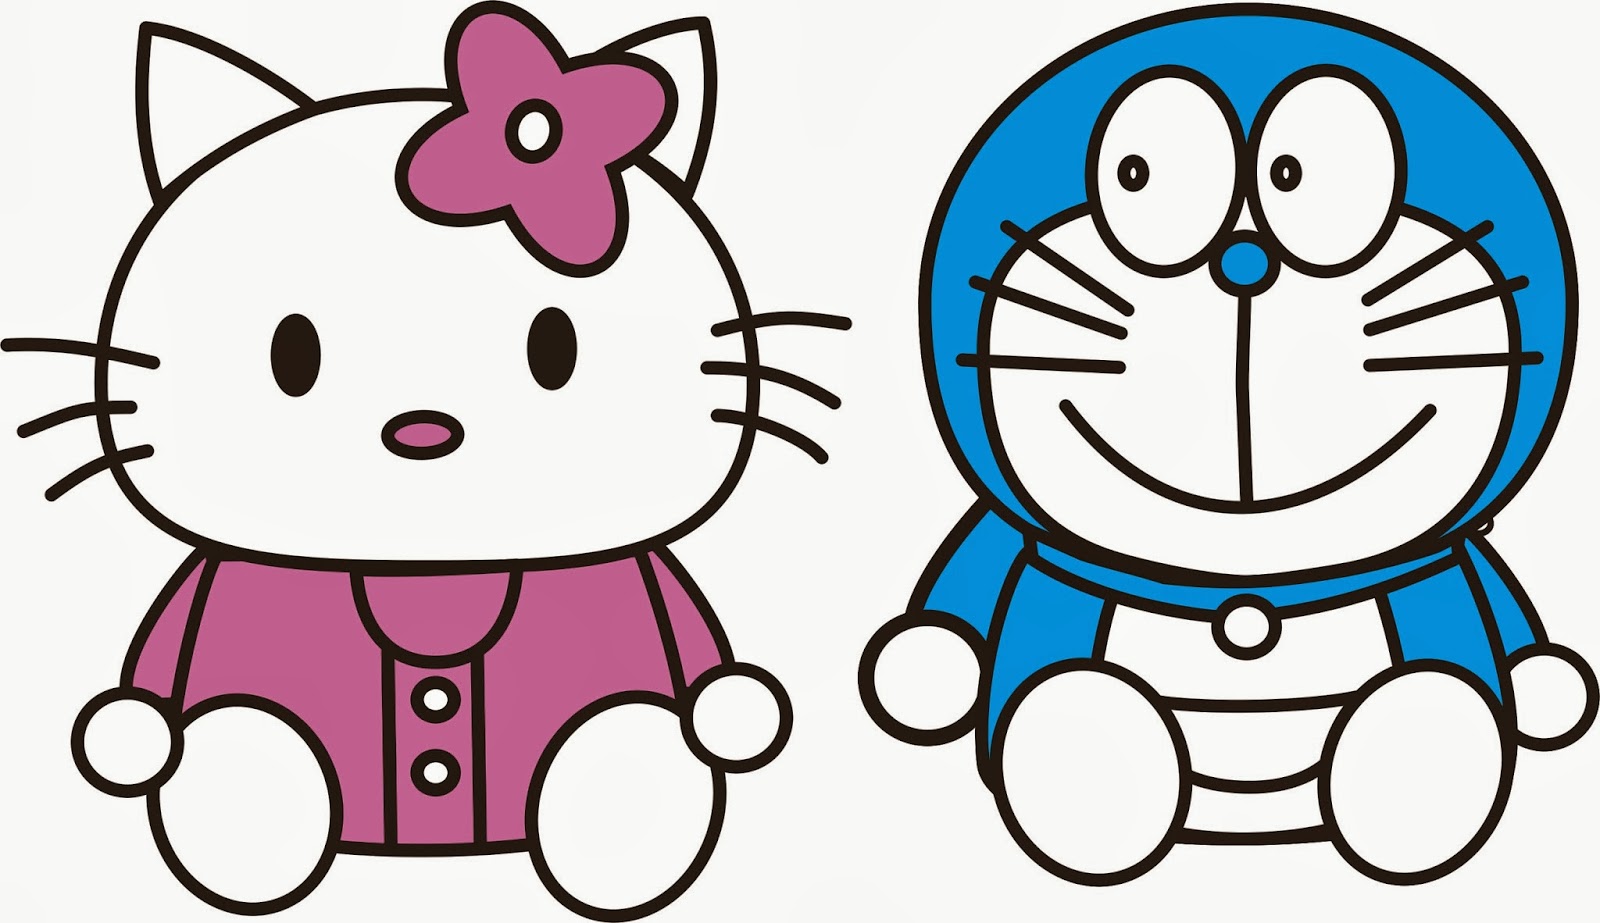 Gambar Kartun Doraemon Dan Hello Kitty Design Kartun